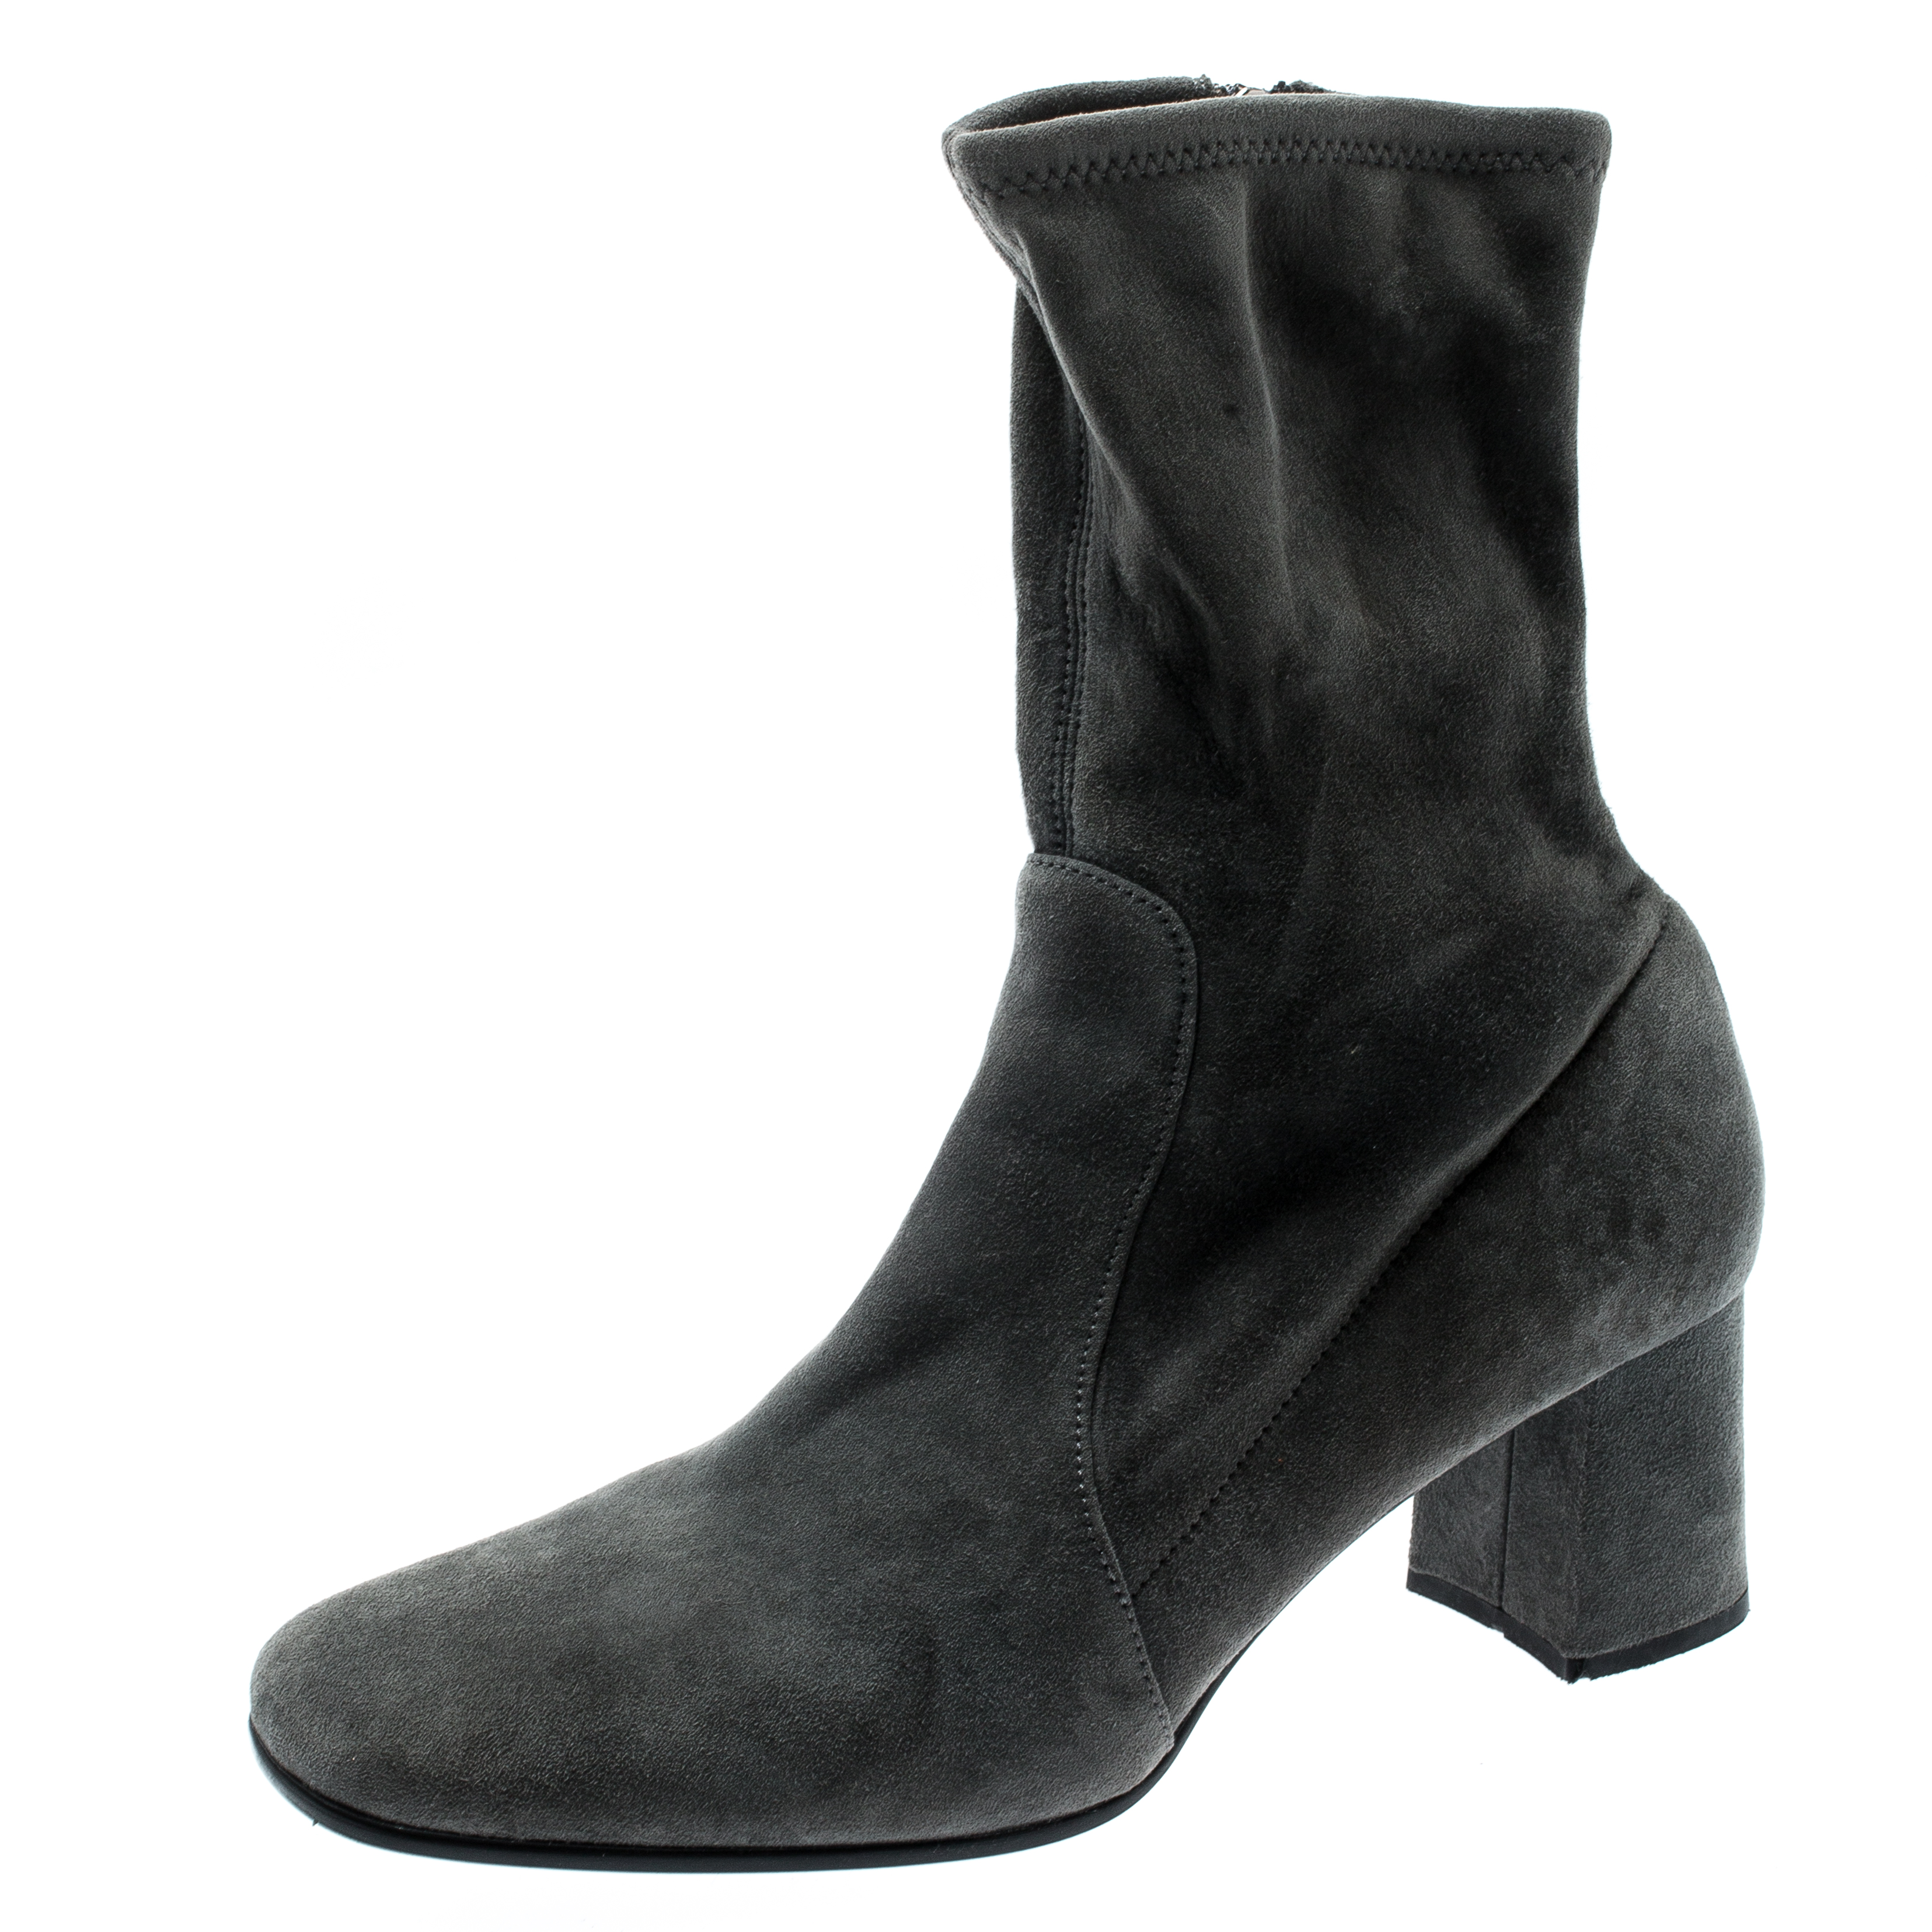 grey suede block heels